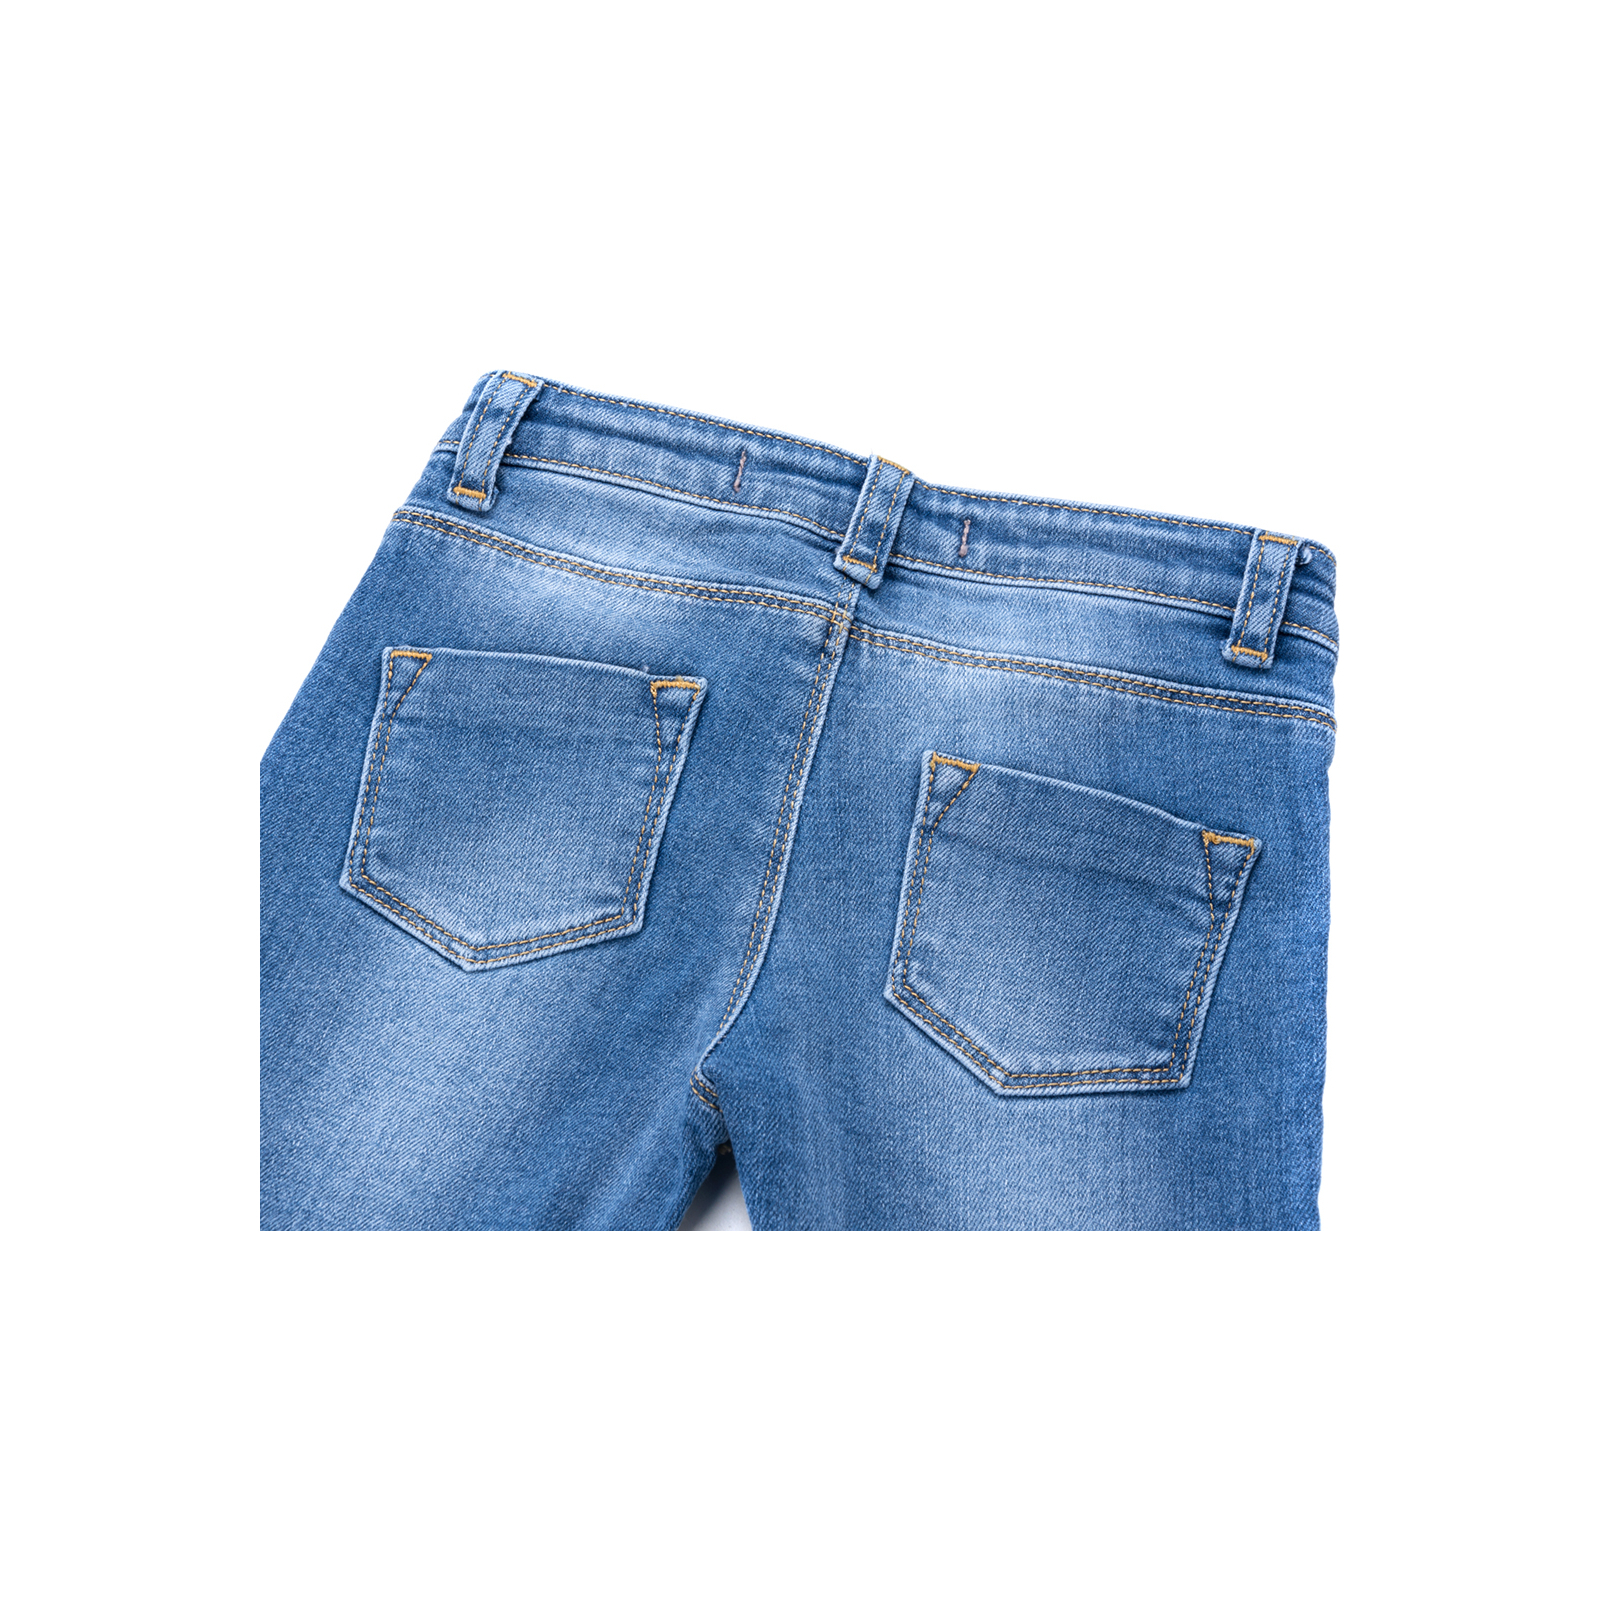 Джинсы Breeze джинсовые с цветочками (OZ-17703-80G-jeans) изображение 5